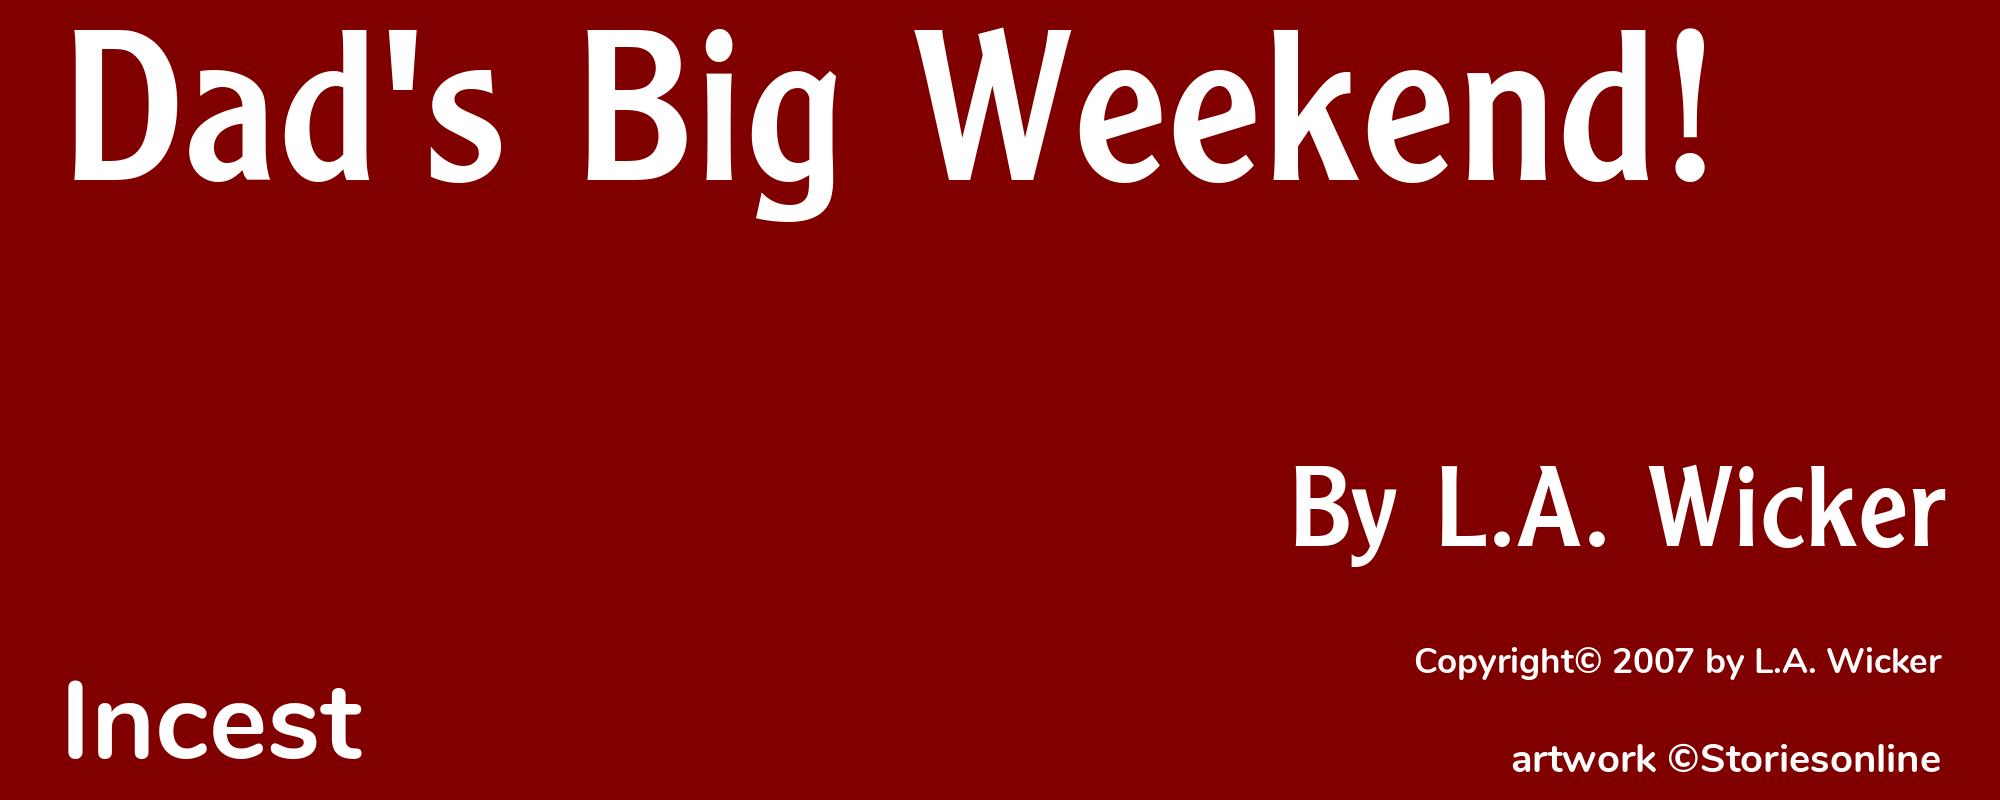 Dad's Big Weekend! - Cover